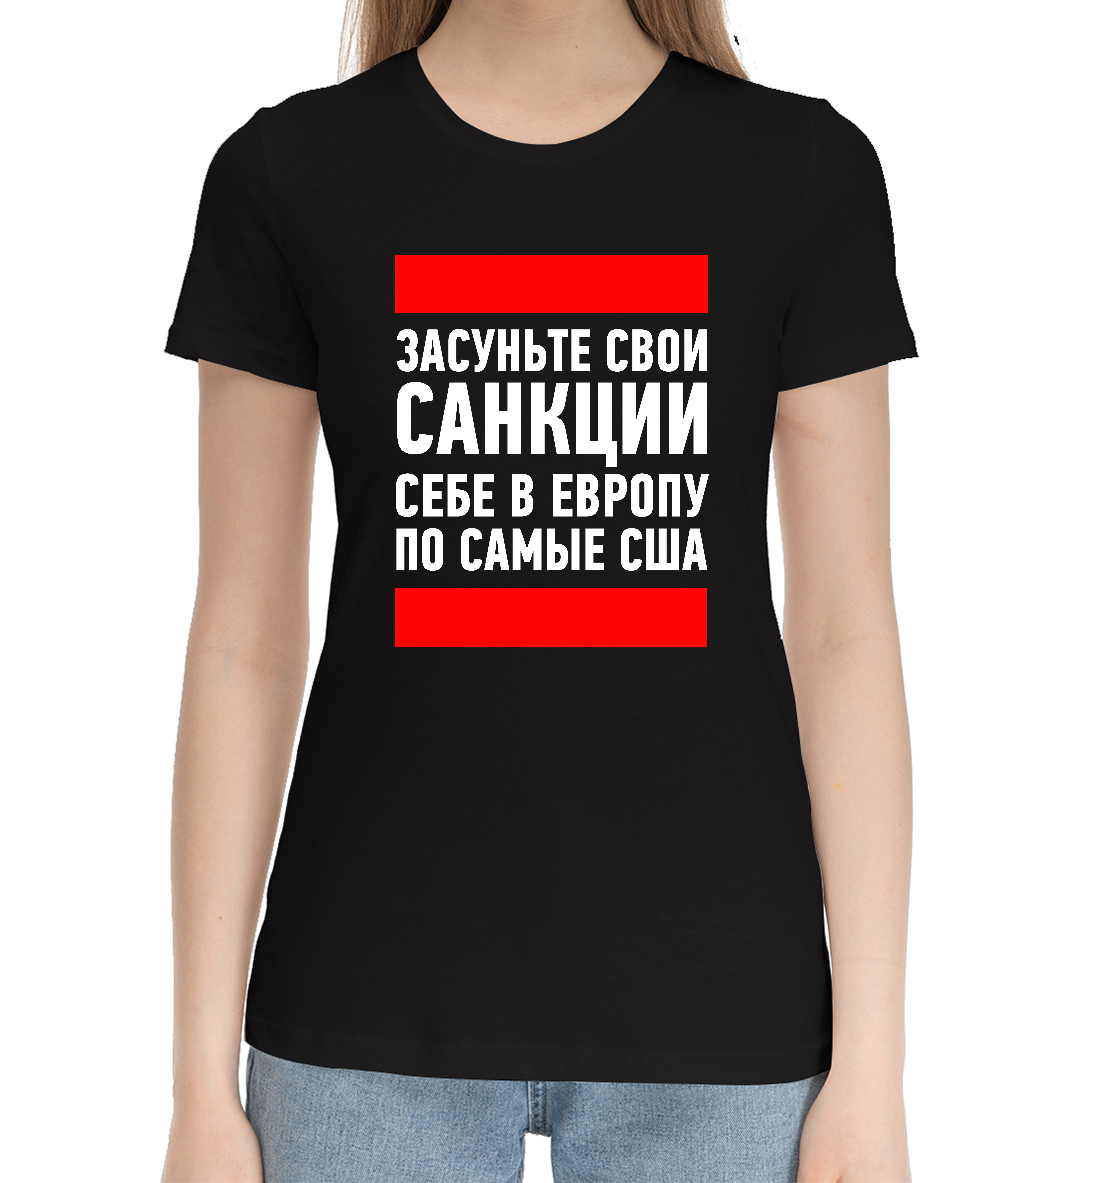 Женская Хлопковая футболка с надписью Санкции, артикул MEM-213688-hfu-1mp